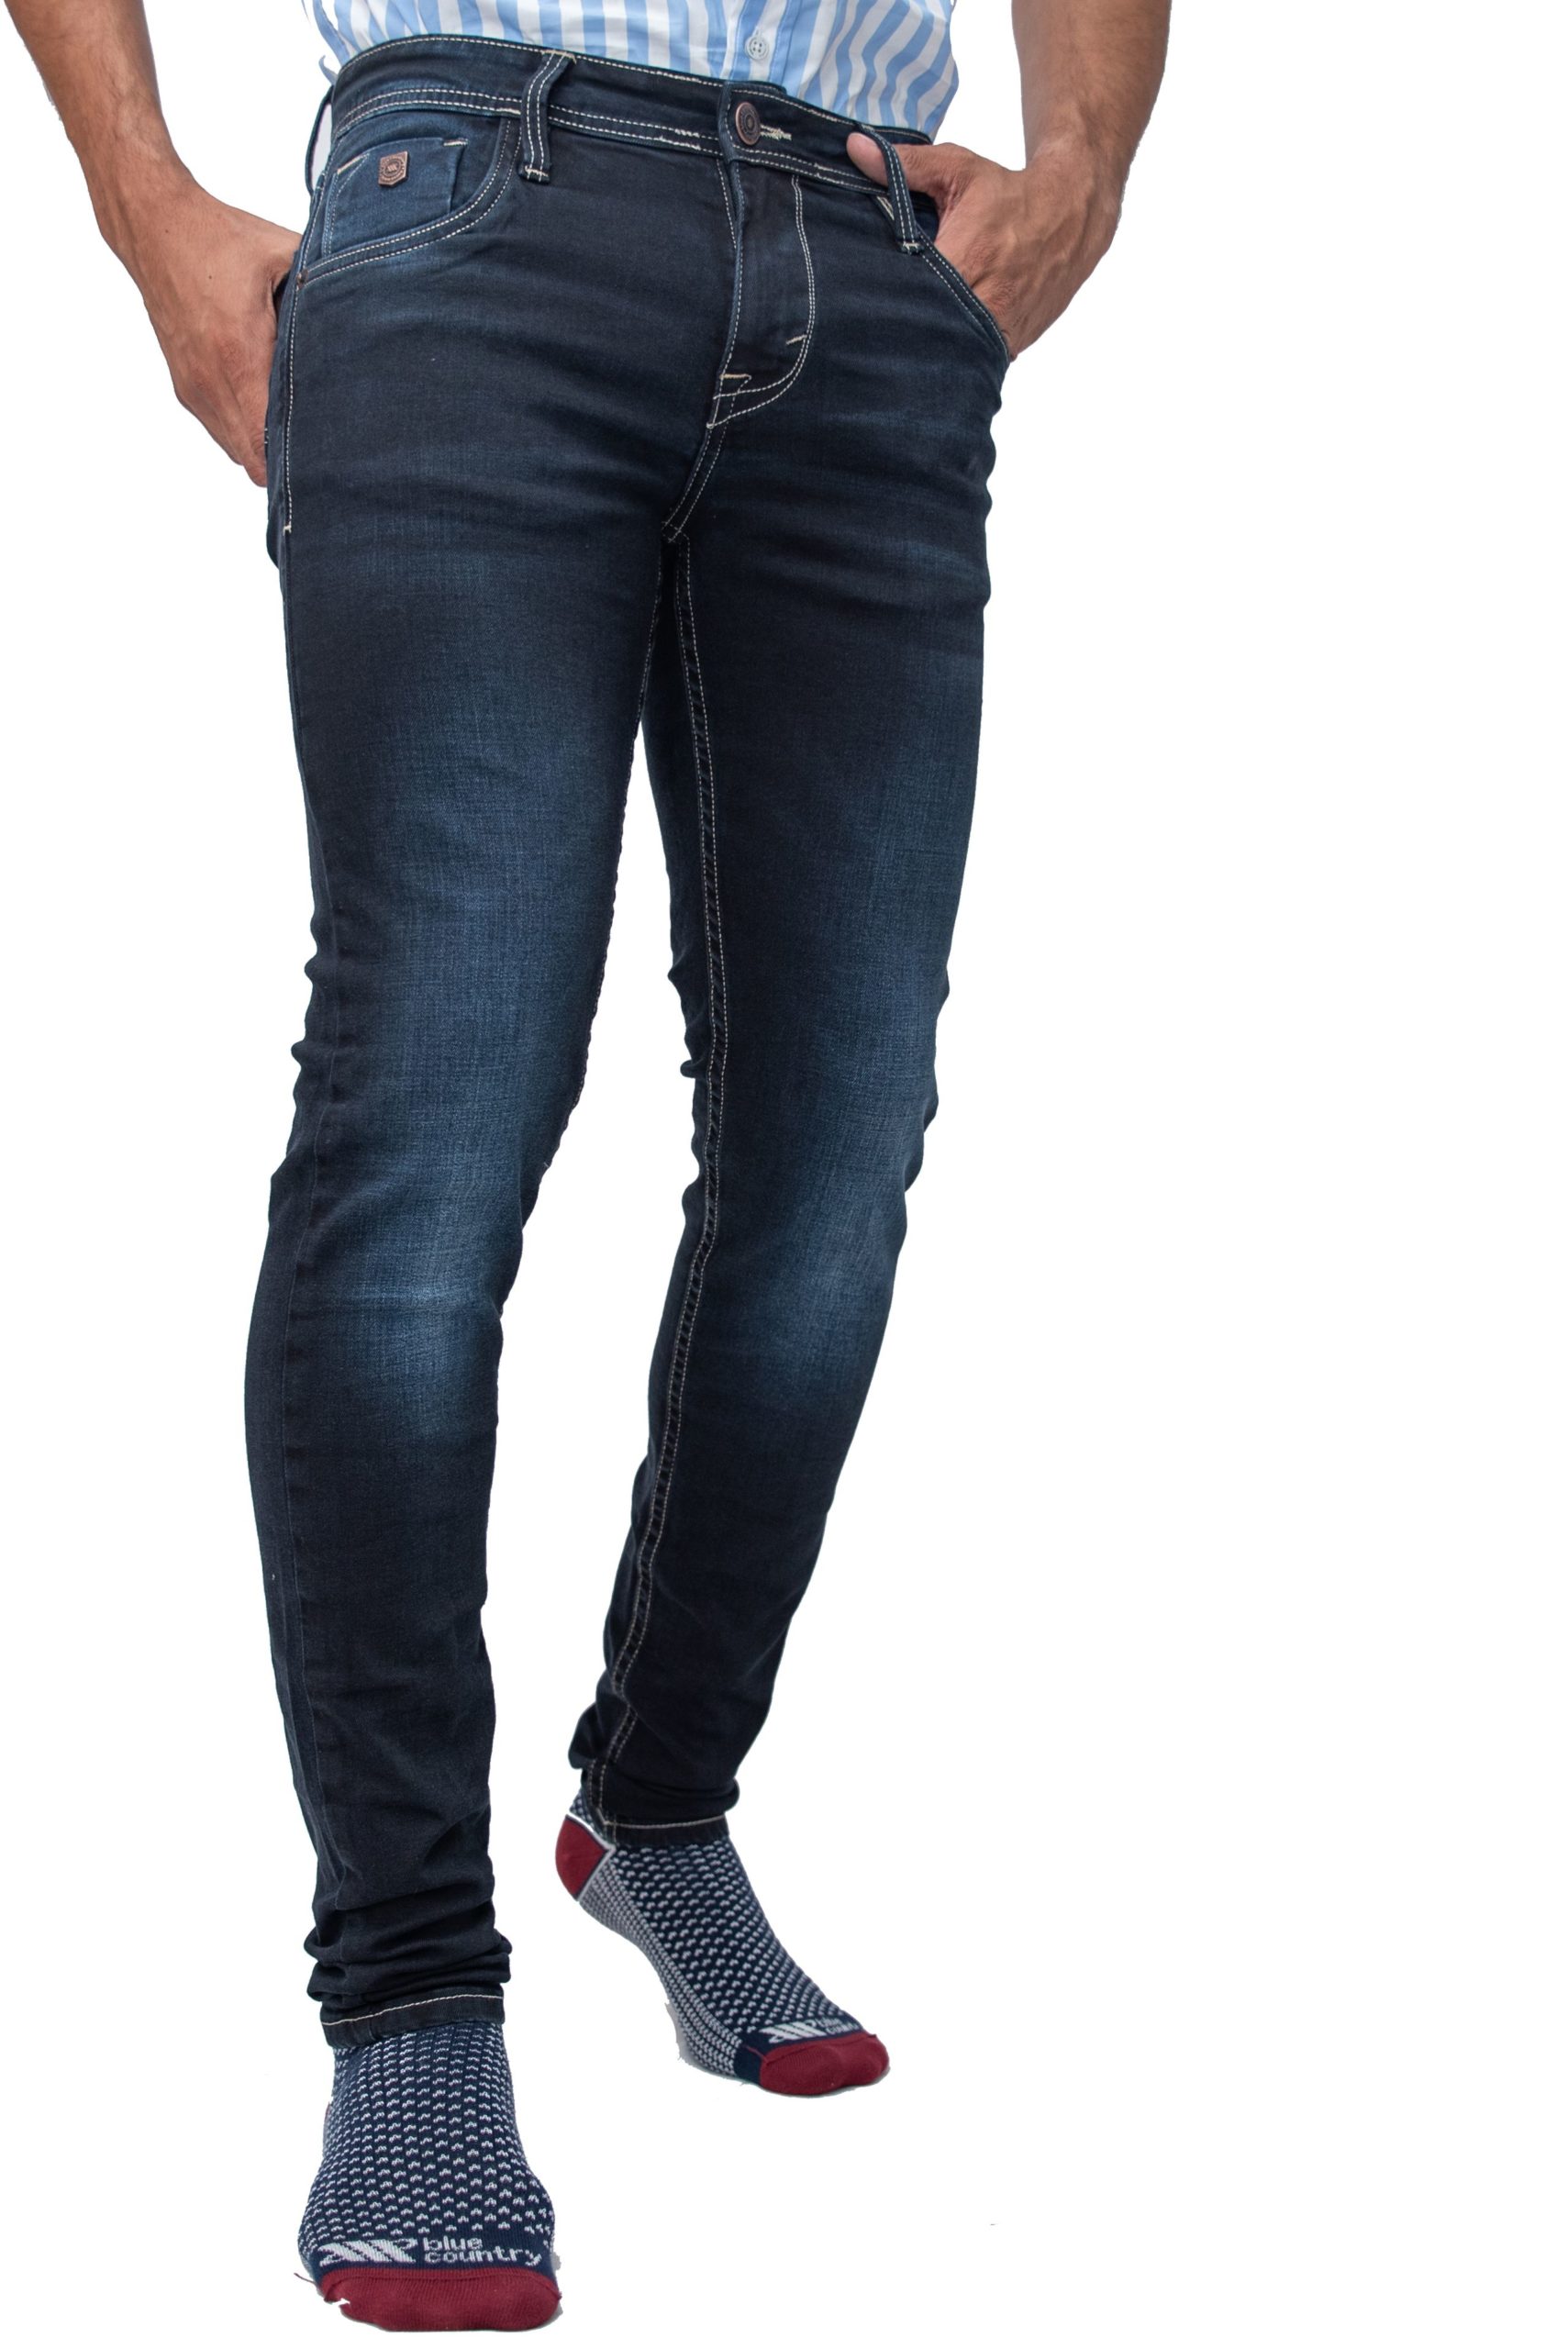 Pantalon vaquero cabries blue jeans cofra talla 42 — Gardenshop